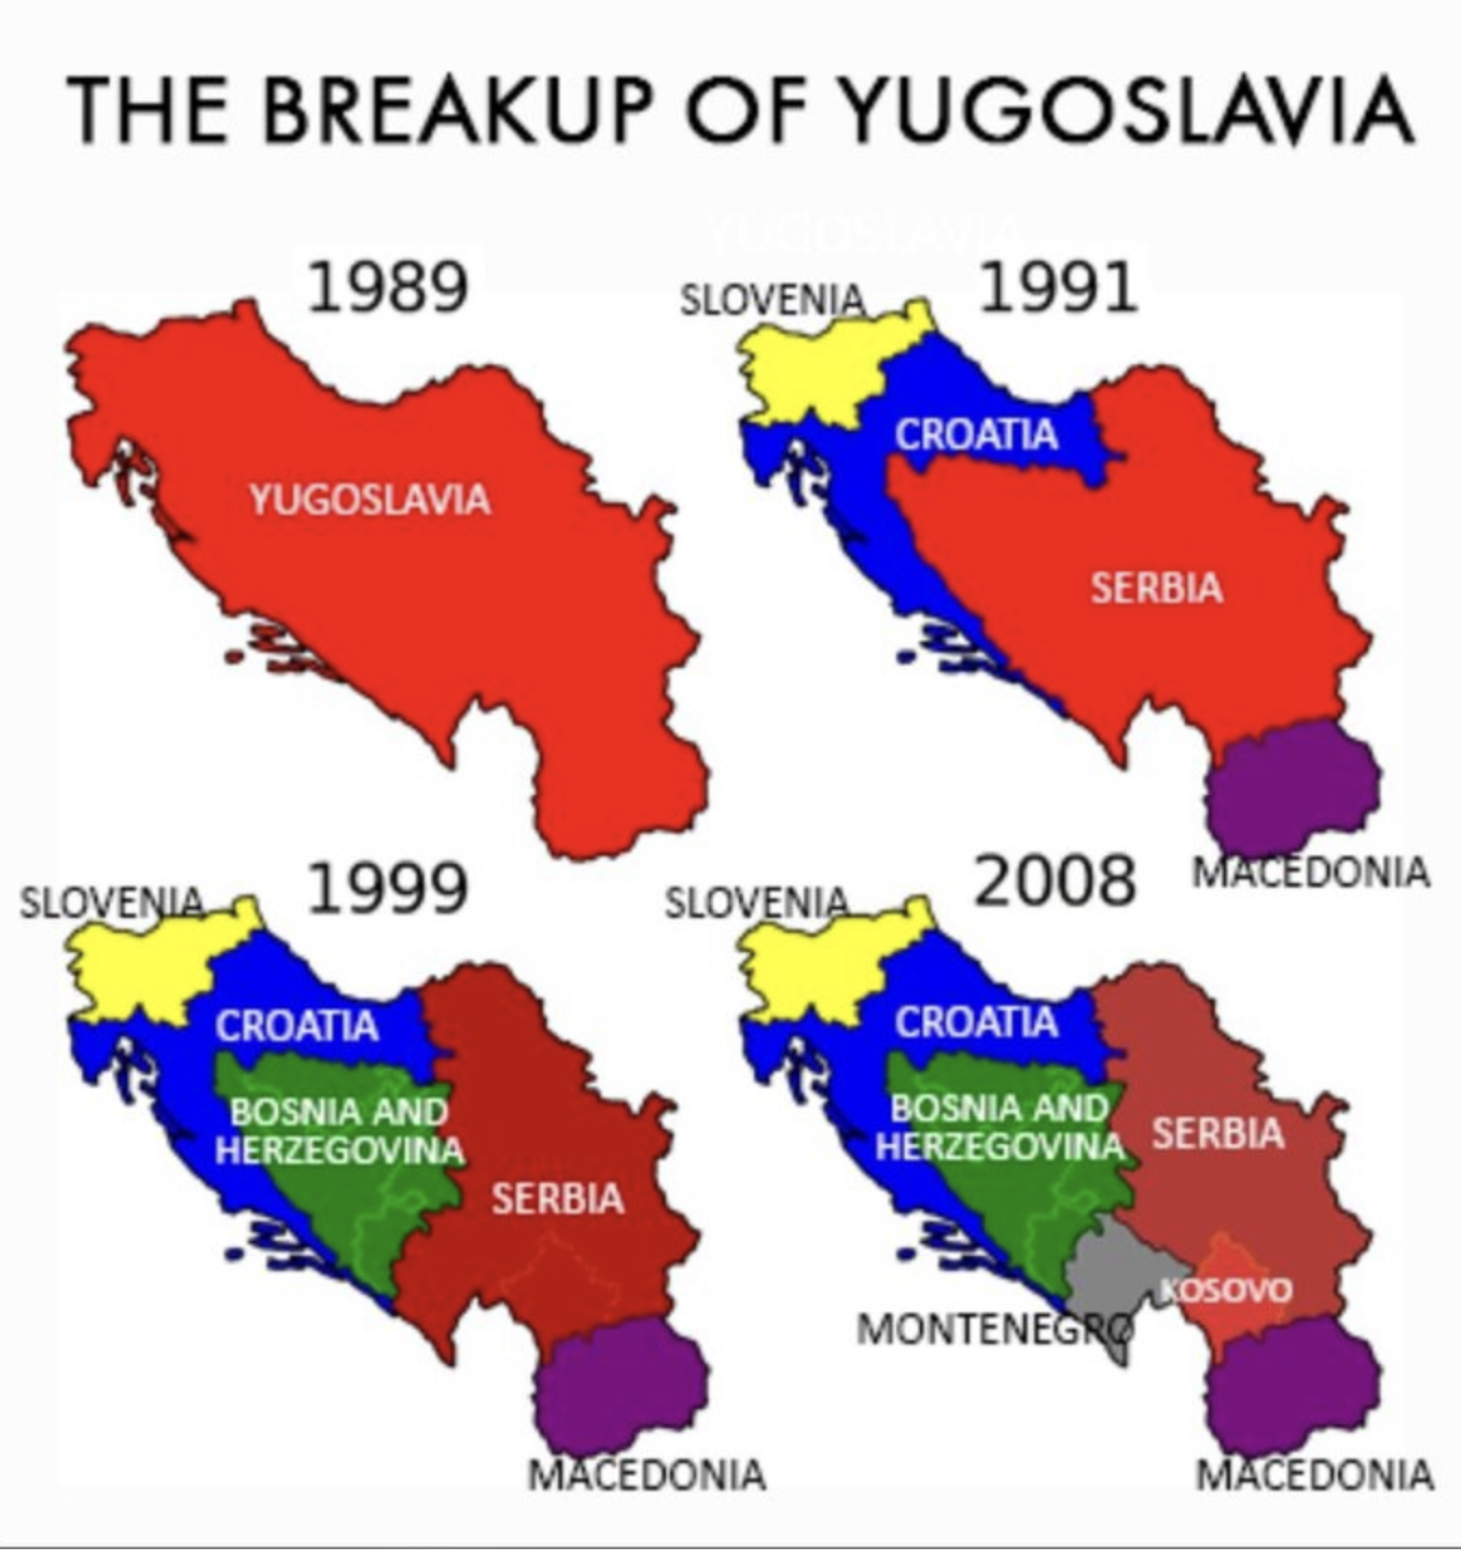 Югославия это сербия. Сербы в Косово карта. Карта Сербия Косово Албания. Югославия. Югославия Сербия Косово карта.